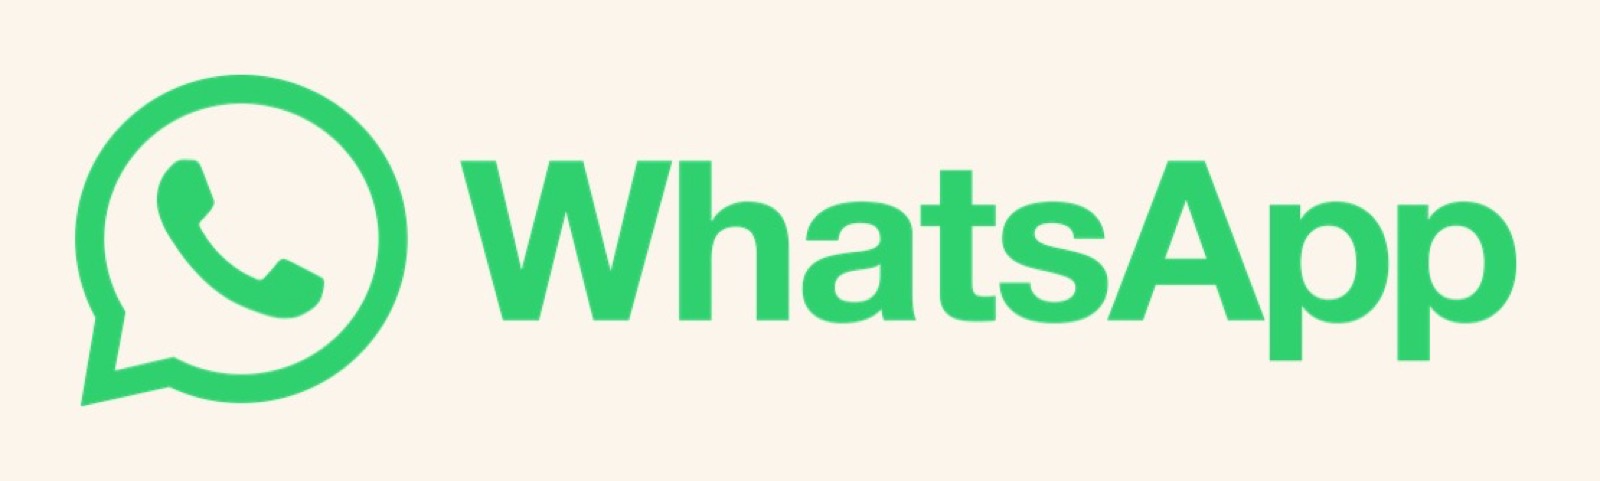 Come impedire le chiamate Whatsapp agli sconosciuti